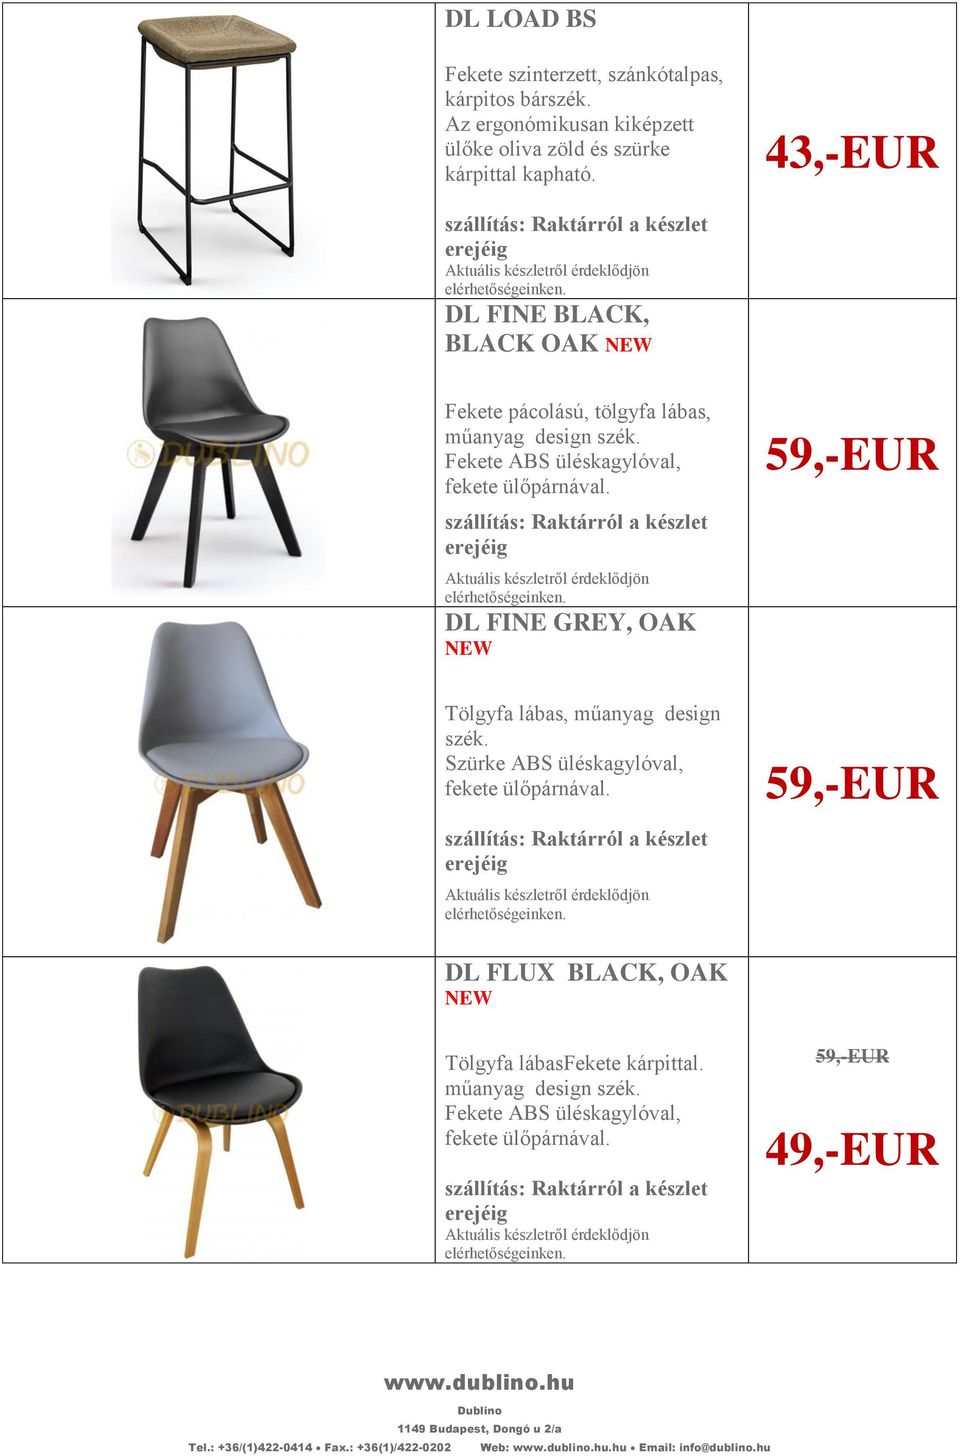 43,-EUR DL FINE BLACK, BLACK OAK NEW Fekete pácolású, tölgyfa lábas, műanyag design szék.